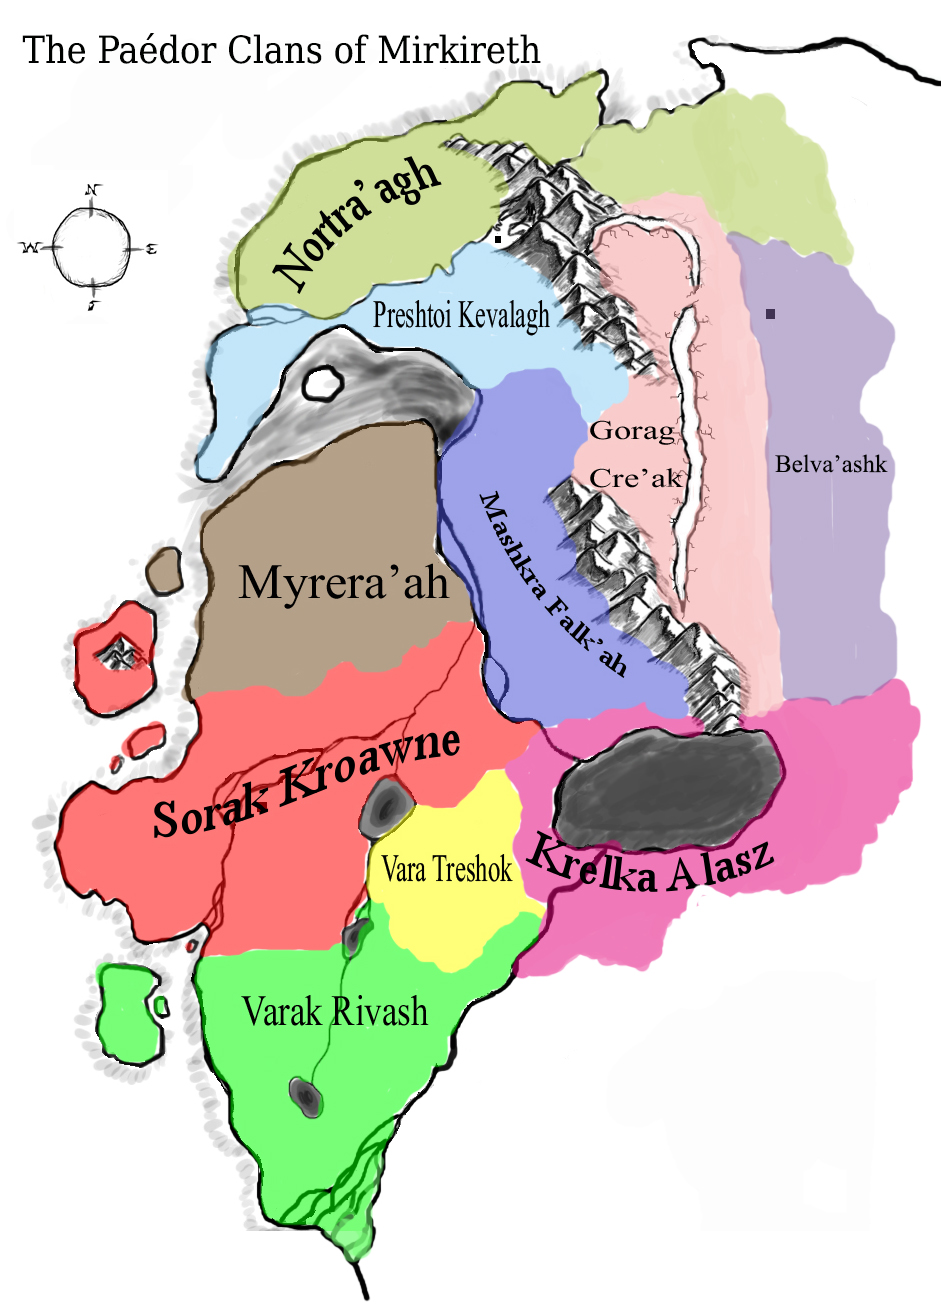 Paédor clan territory